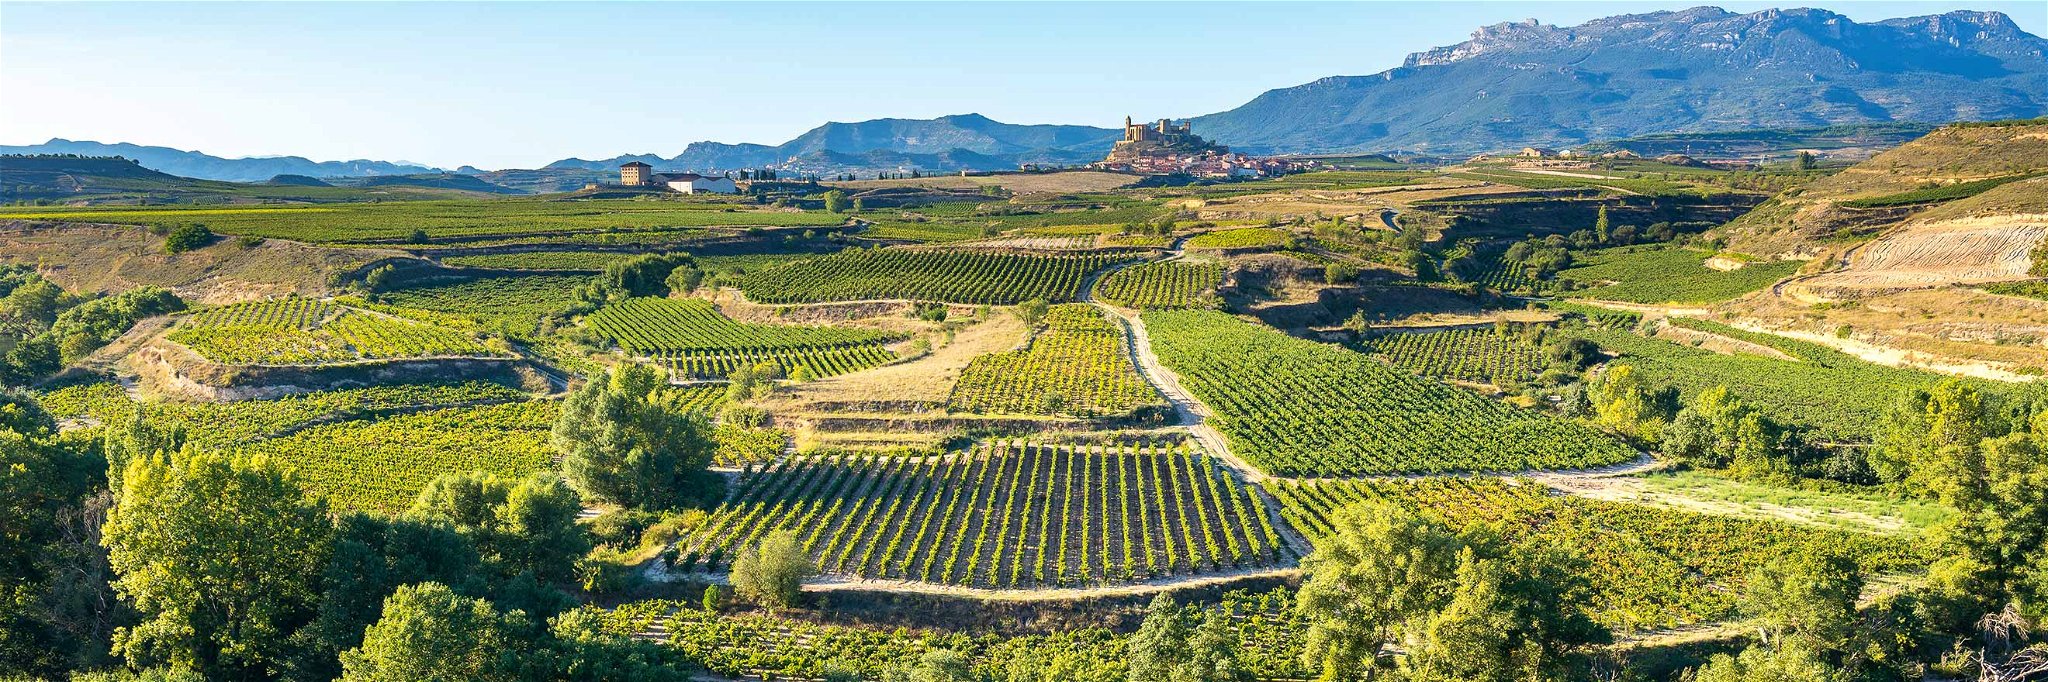 Der Schwerpunkt der Cava-Produktion liegt in Katalonien, wo sich die meisten Weinbauorte befinden.